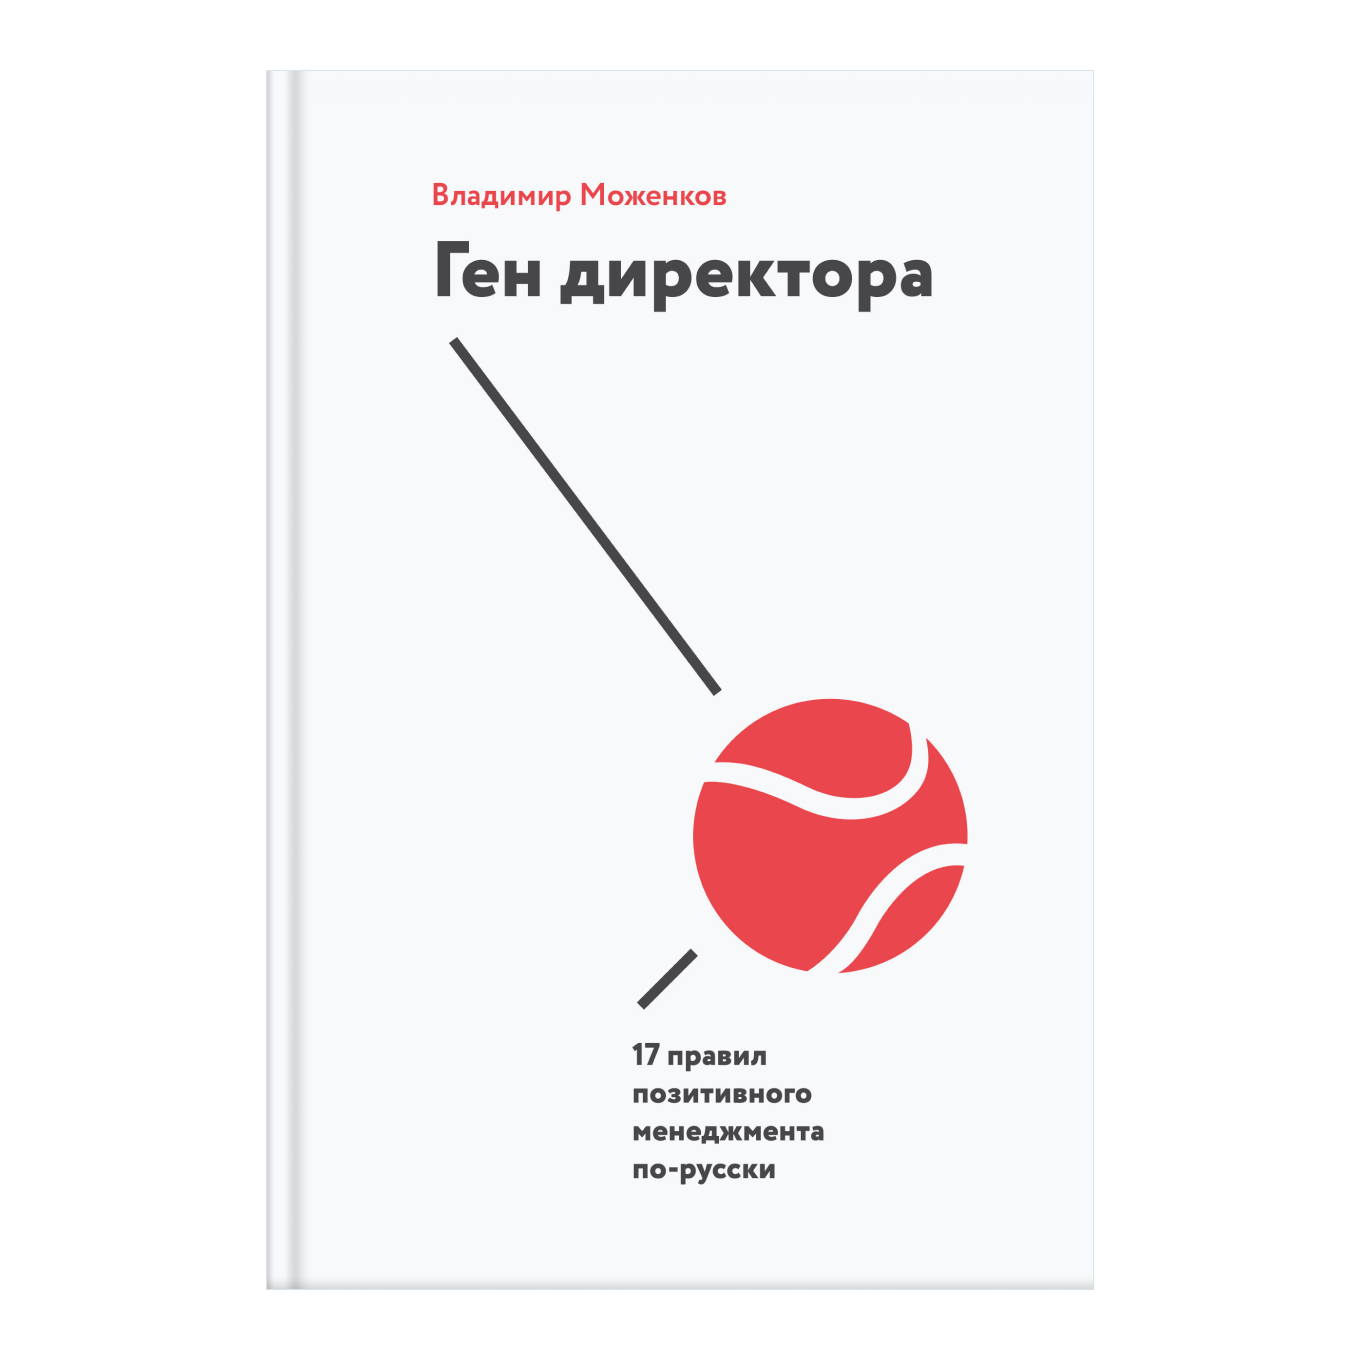 Книга Владимира Моженкова «Ген директора»